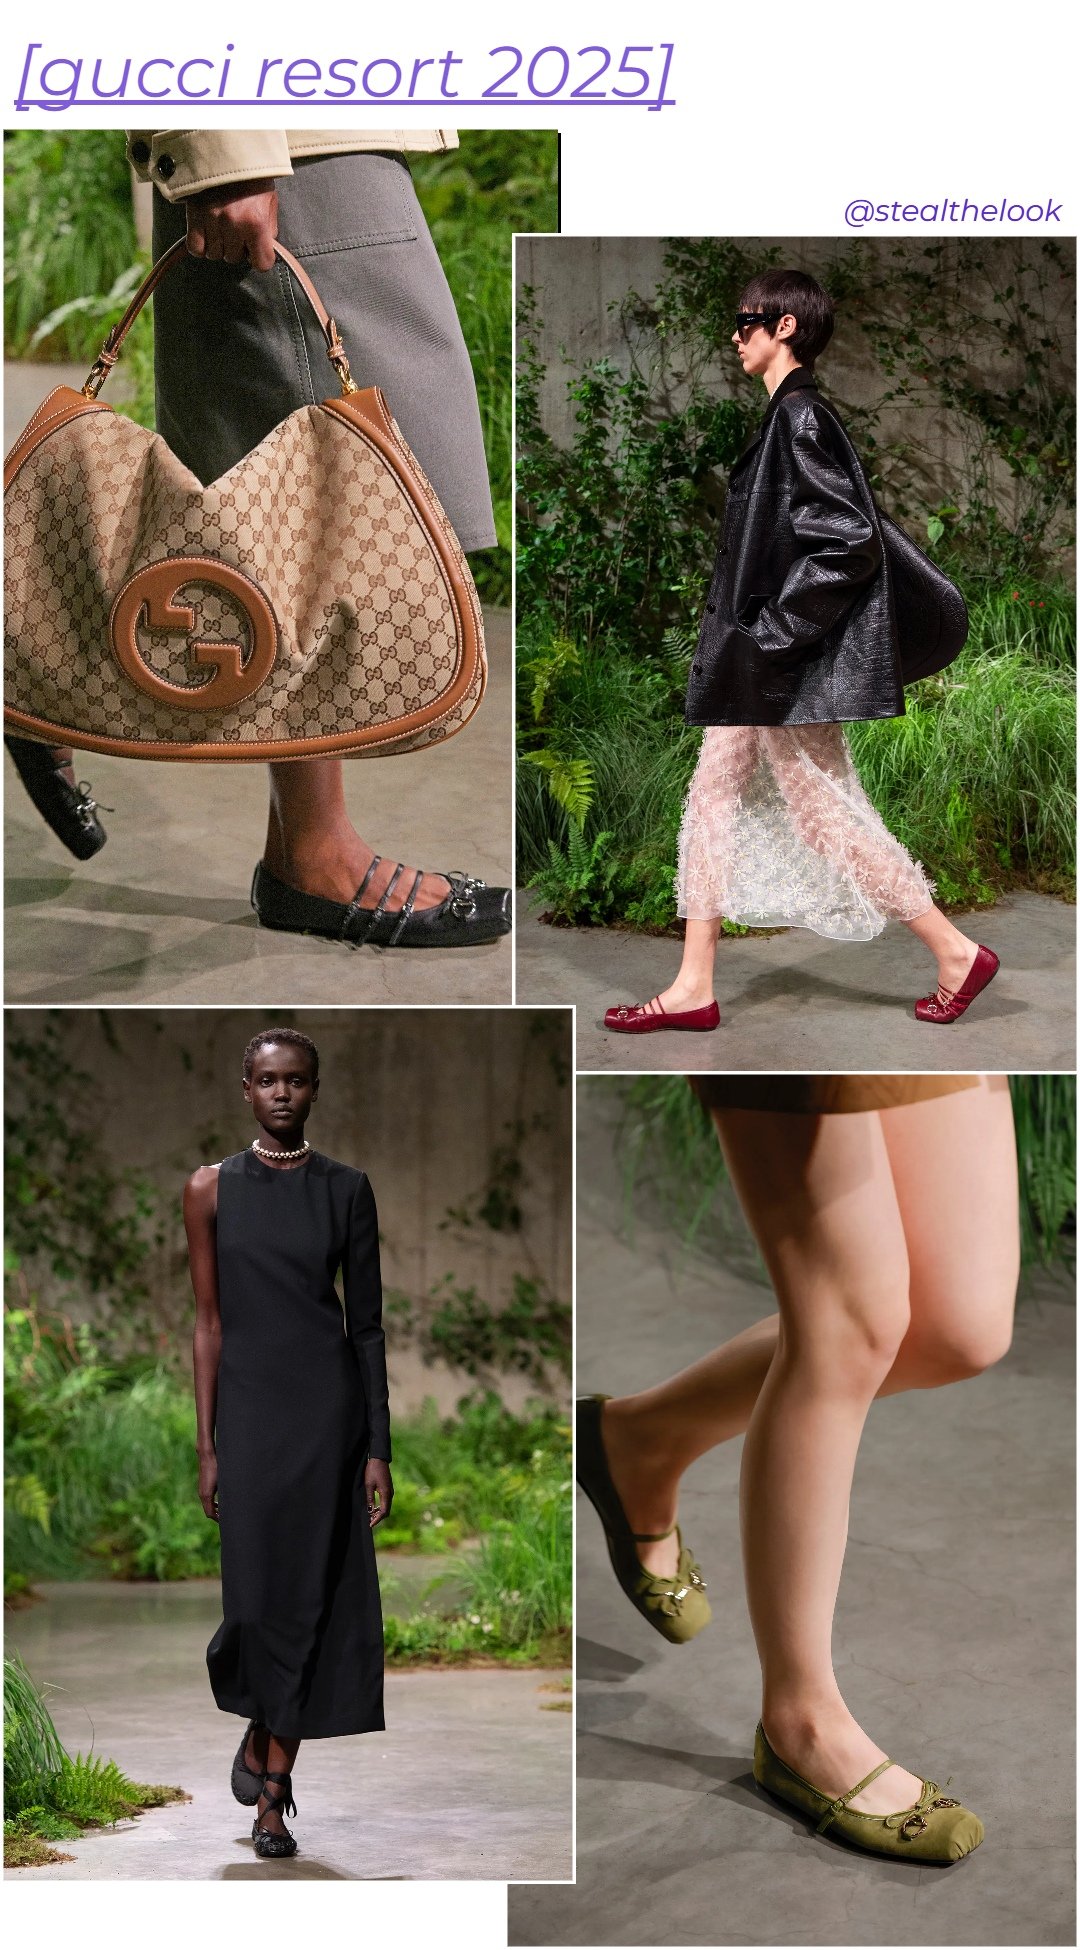 Gucci - roupas diversas - sapatilha da gucci - verão - colagem de imagens - https://stealthelook.com.br